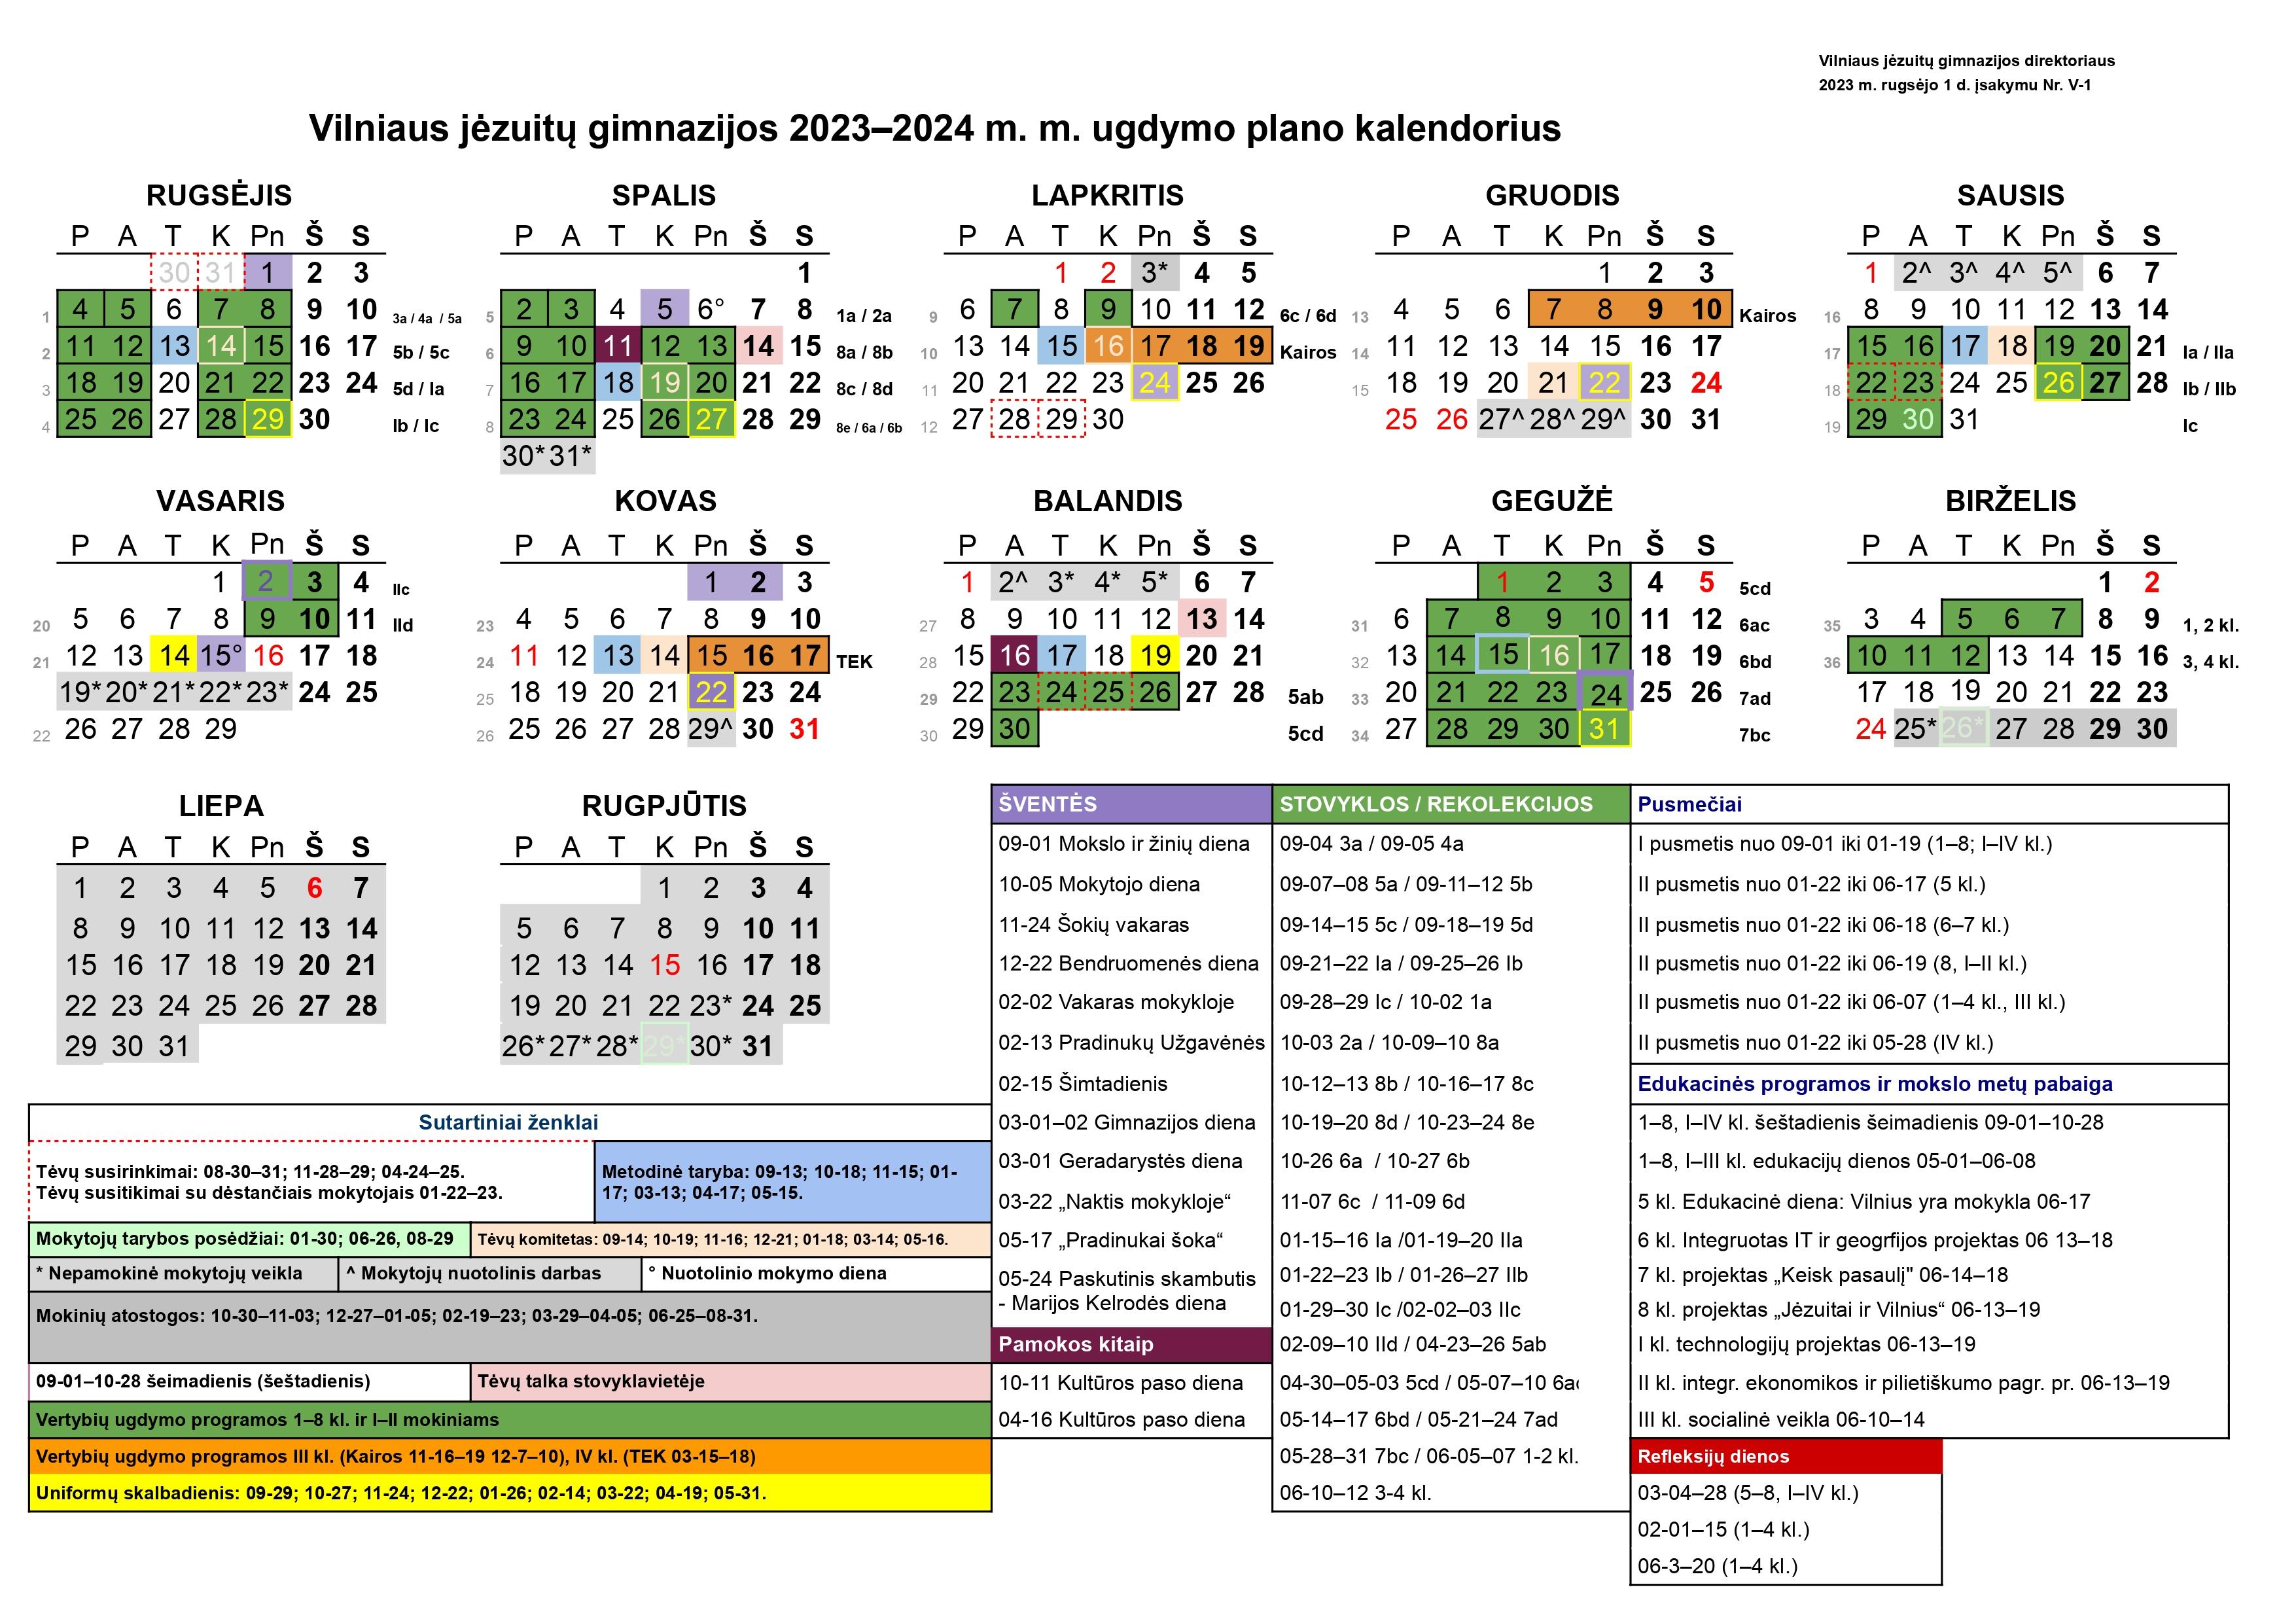 Ugdymo plano kalendorius 2023-2024